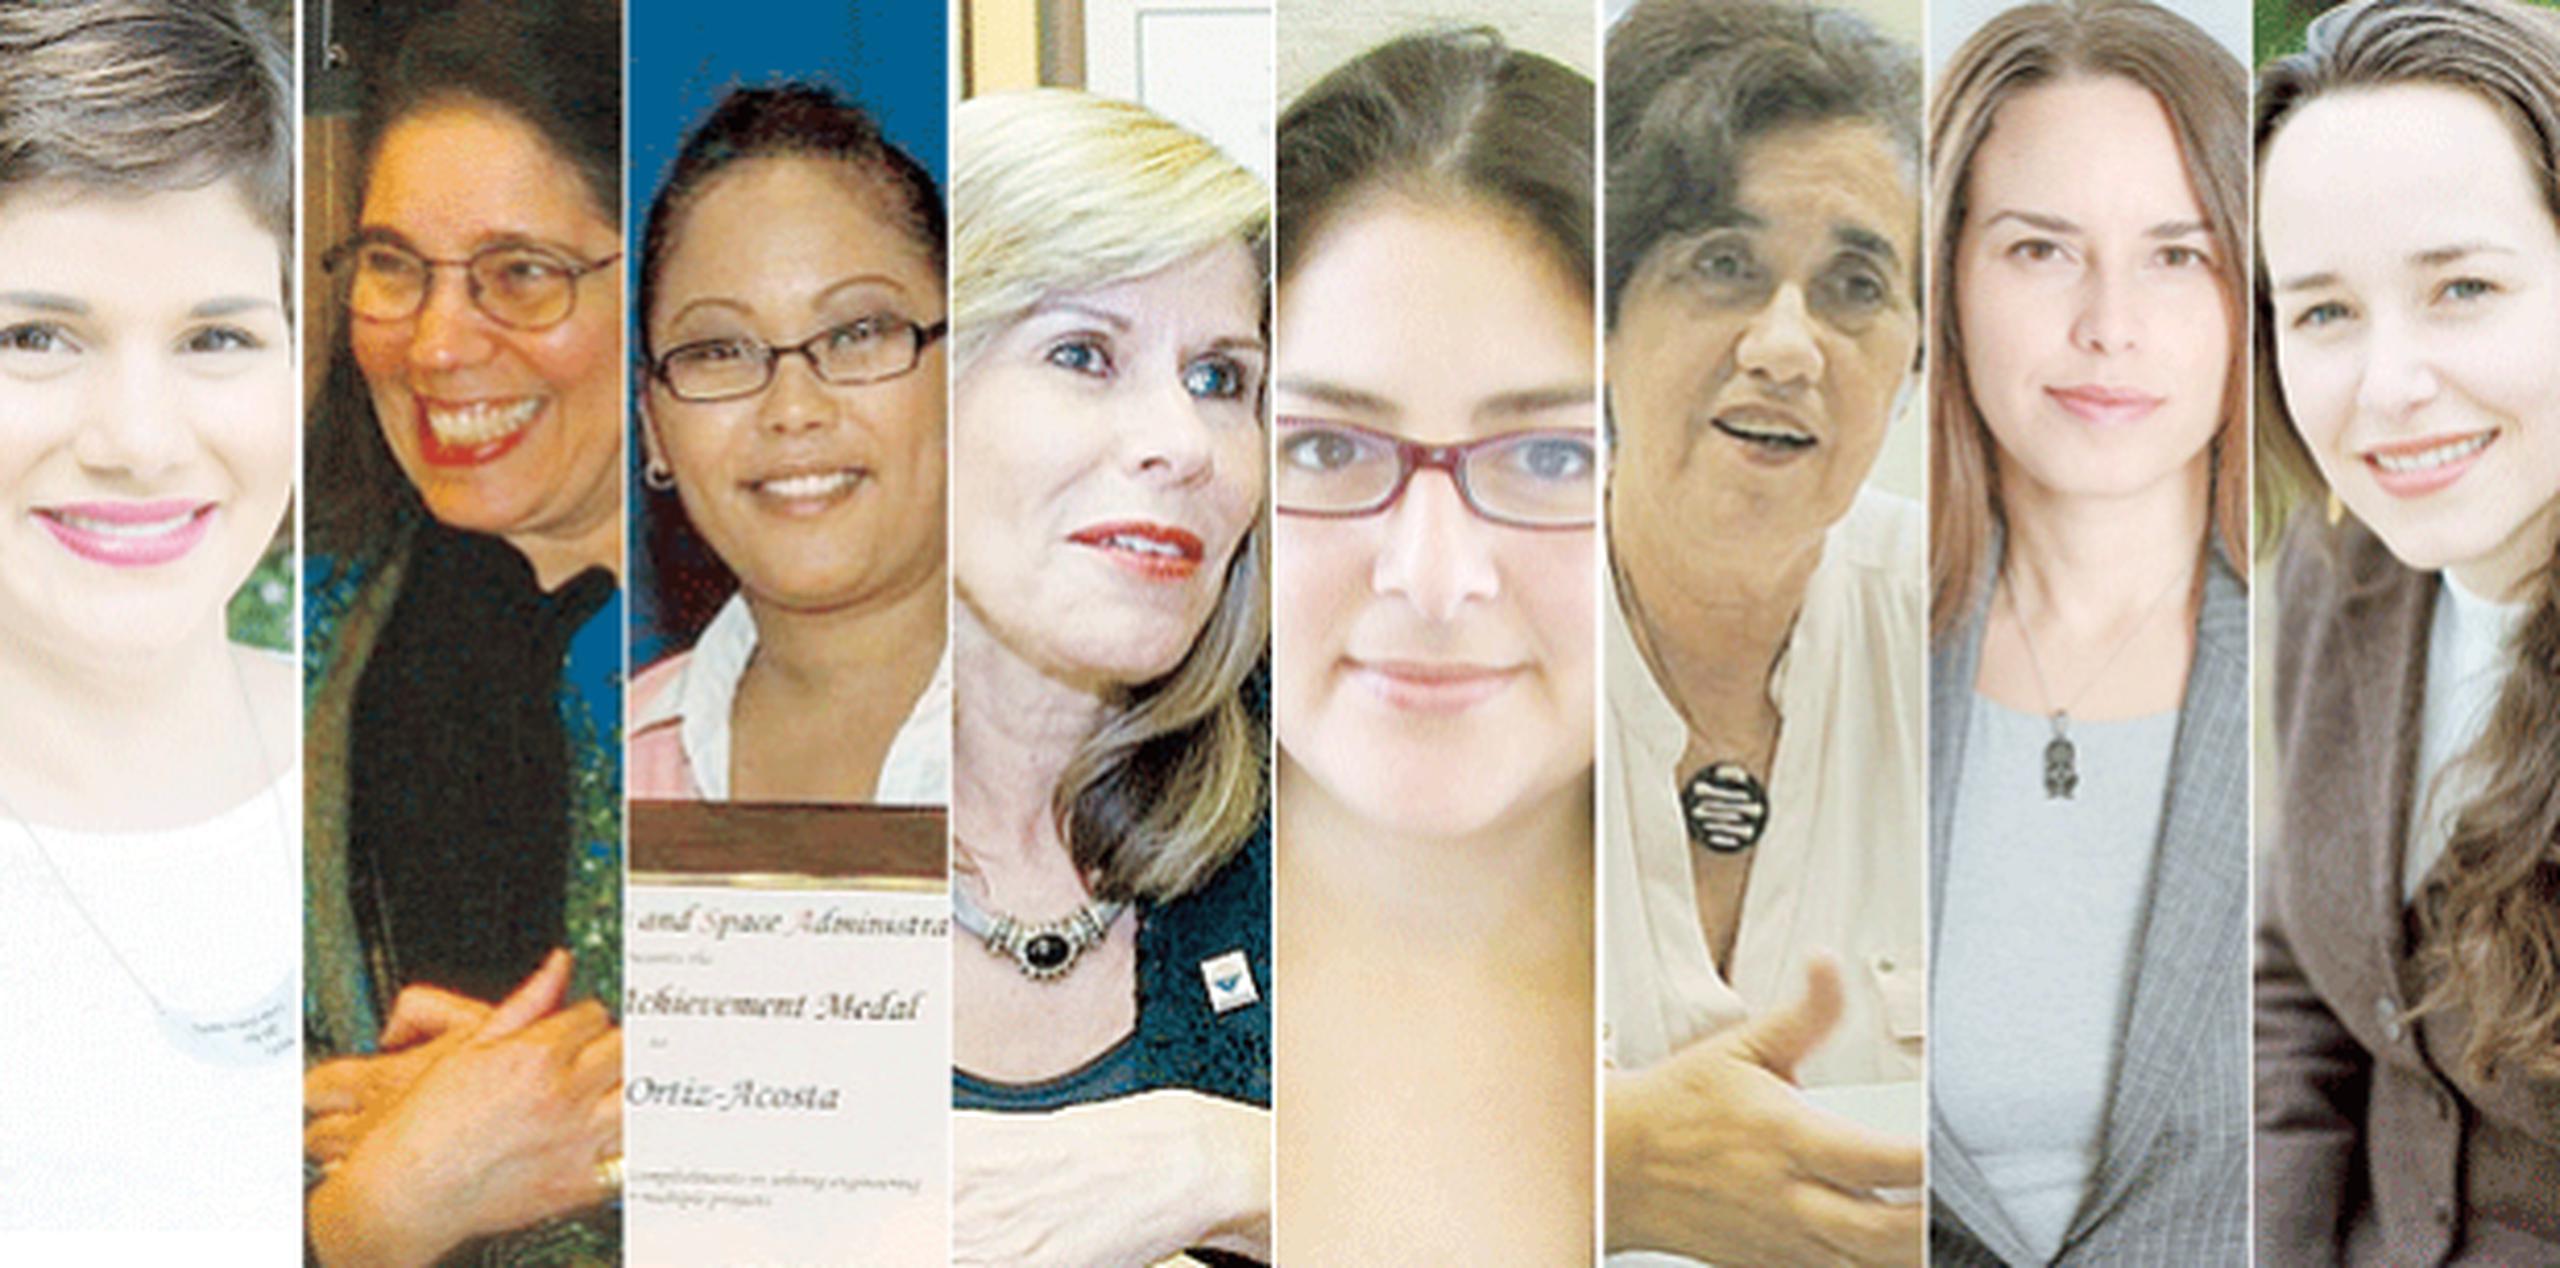 Con motivo de la Semana de la Mujer, te presentamos a un grupo de féminas boricuas exitosas y destacadas en los campos de STEM, tanto en Puerto Rico como en Estados Unidos y en otras partes del mundo. (Archivo)